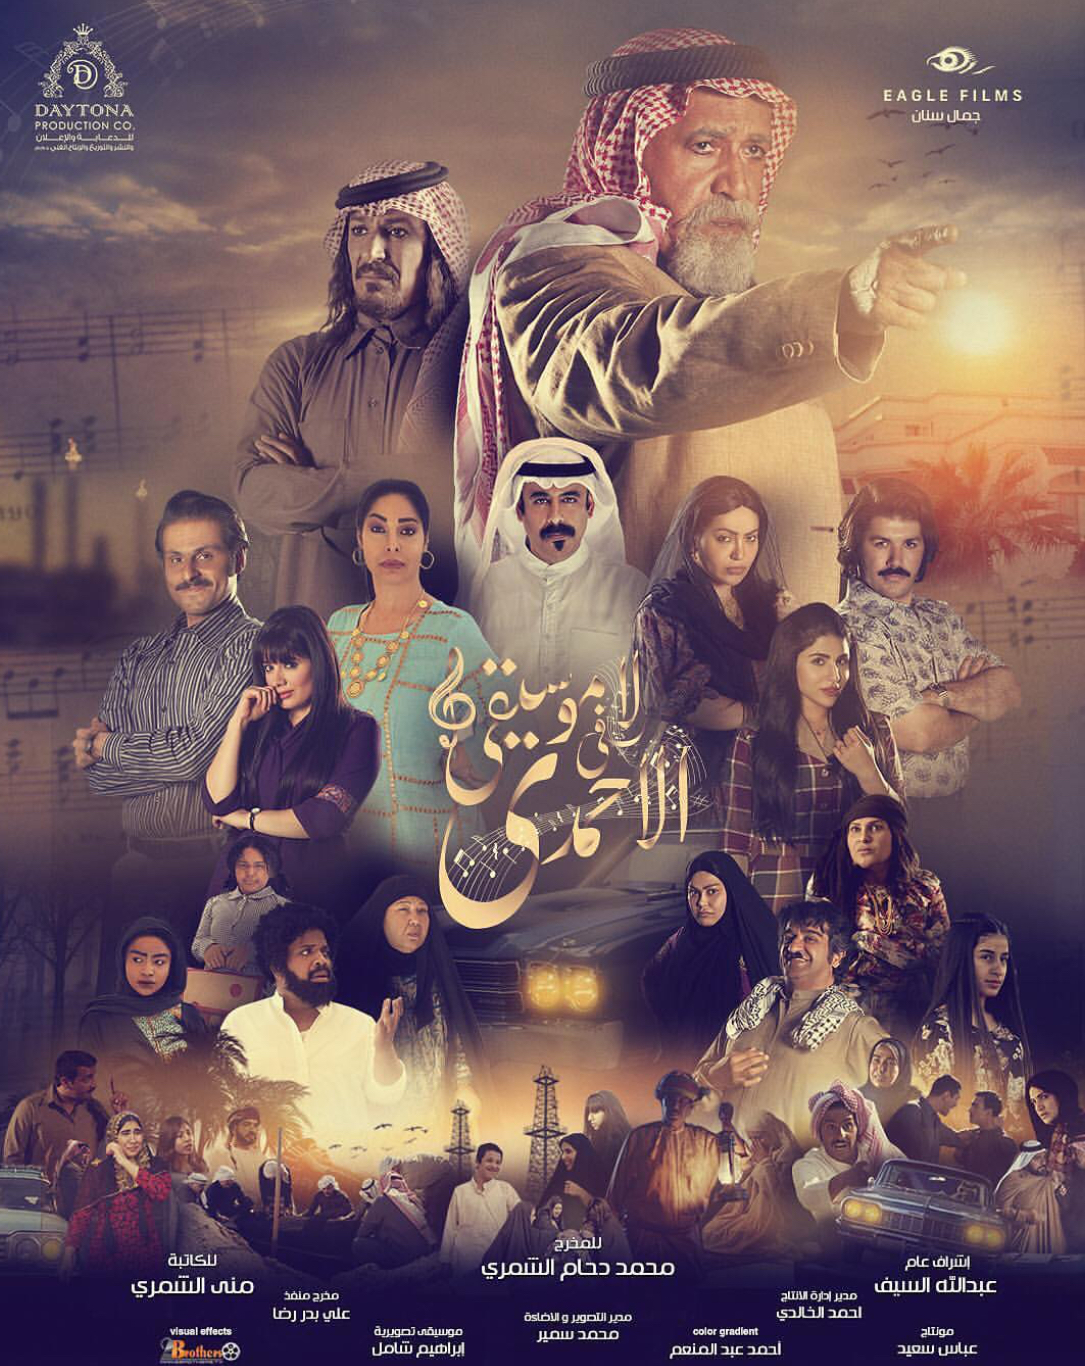 قصة وأحداث مسلسل لا موسيقى في الأحمدي رمضان 2019